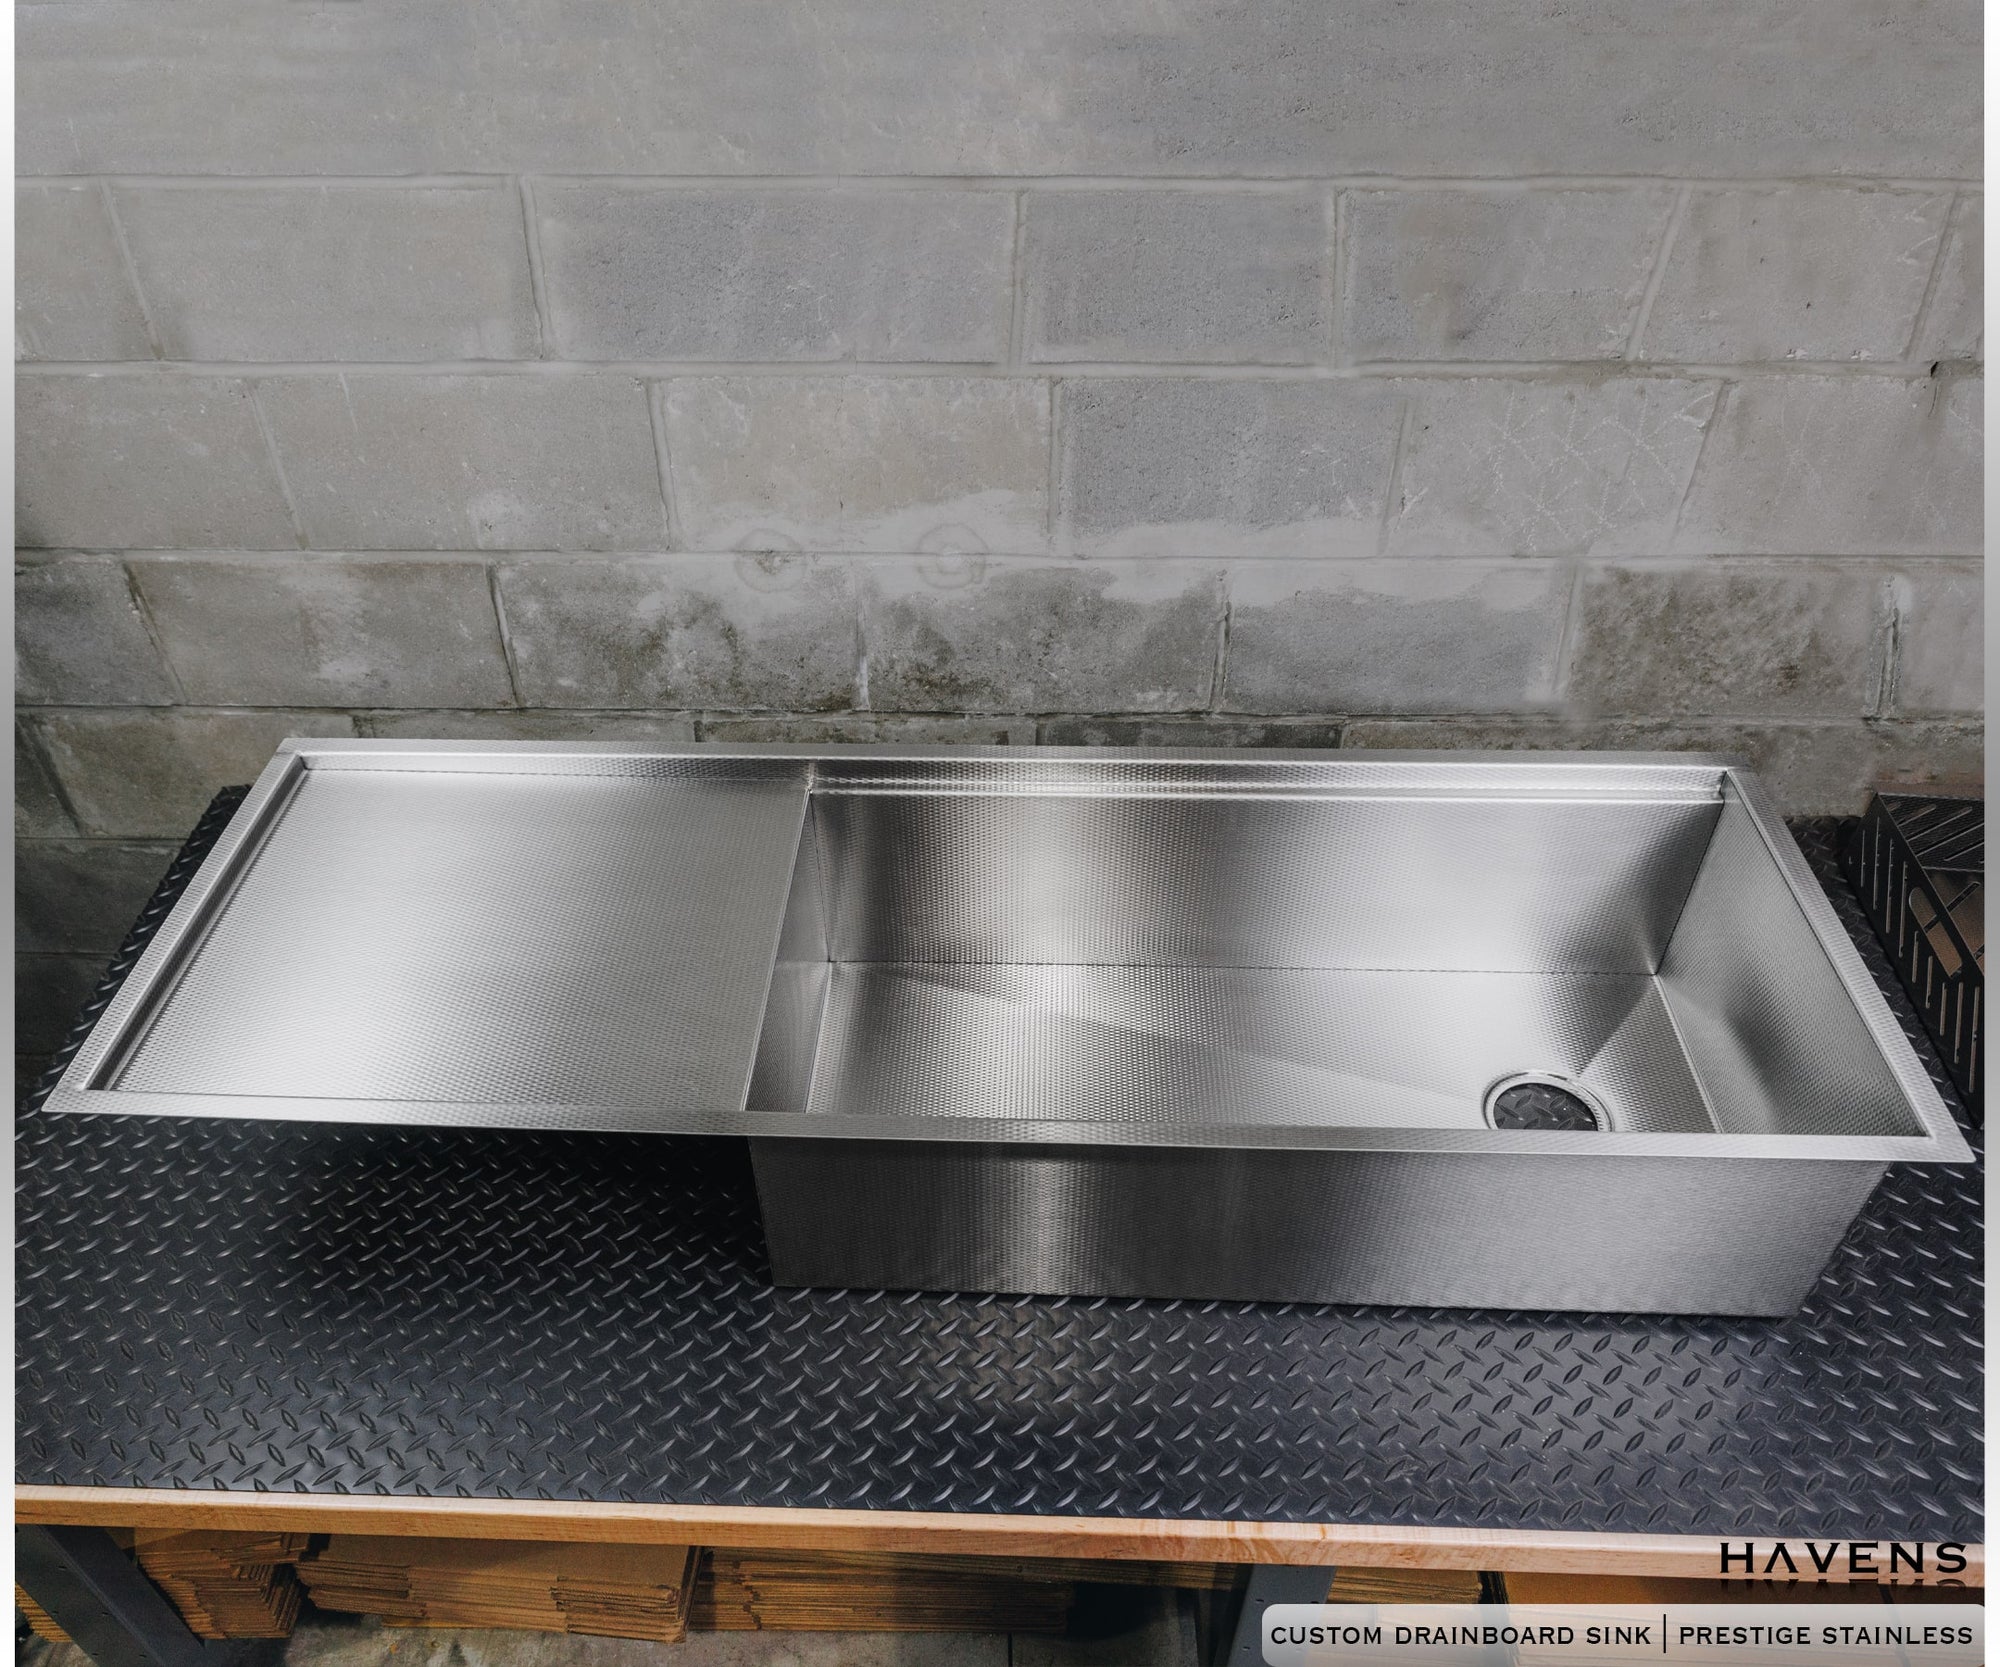 Stainless Steel Kitchen Sink Open Back Drainboard